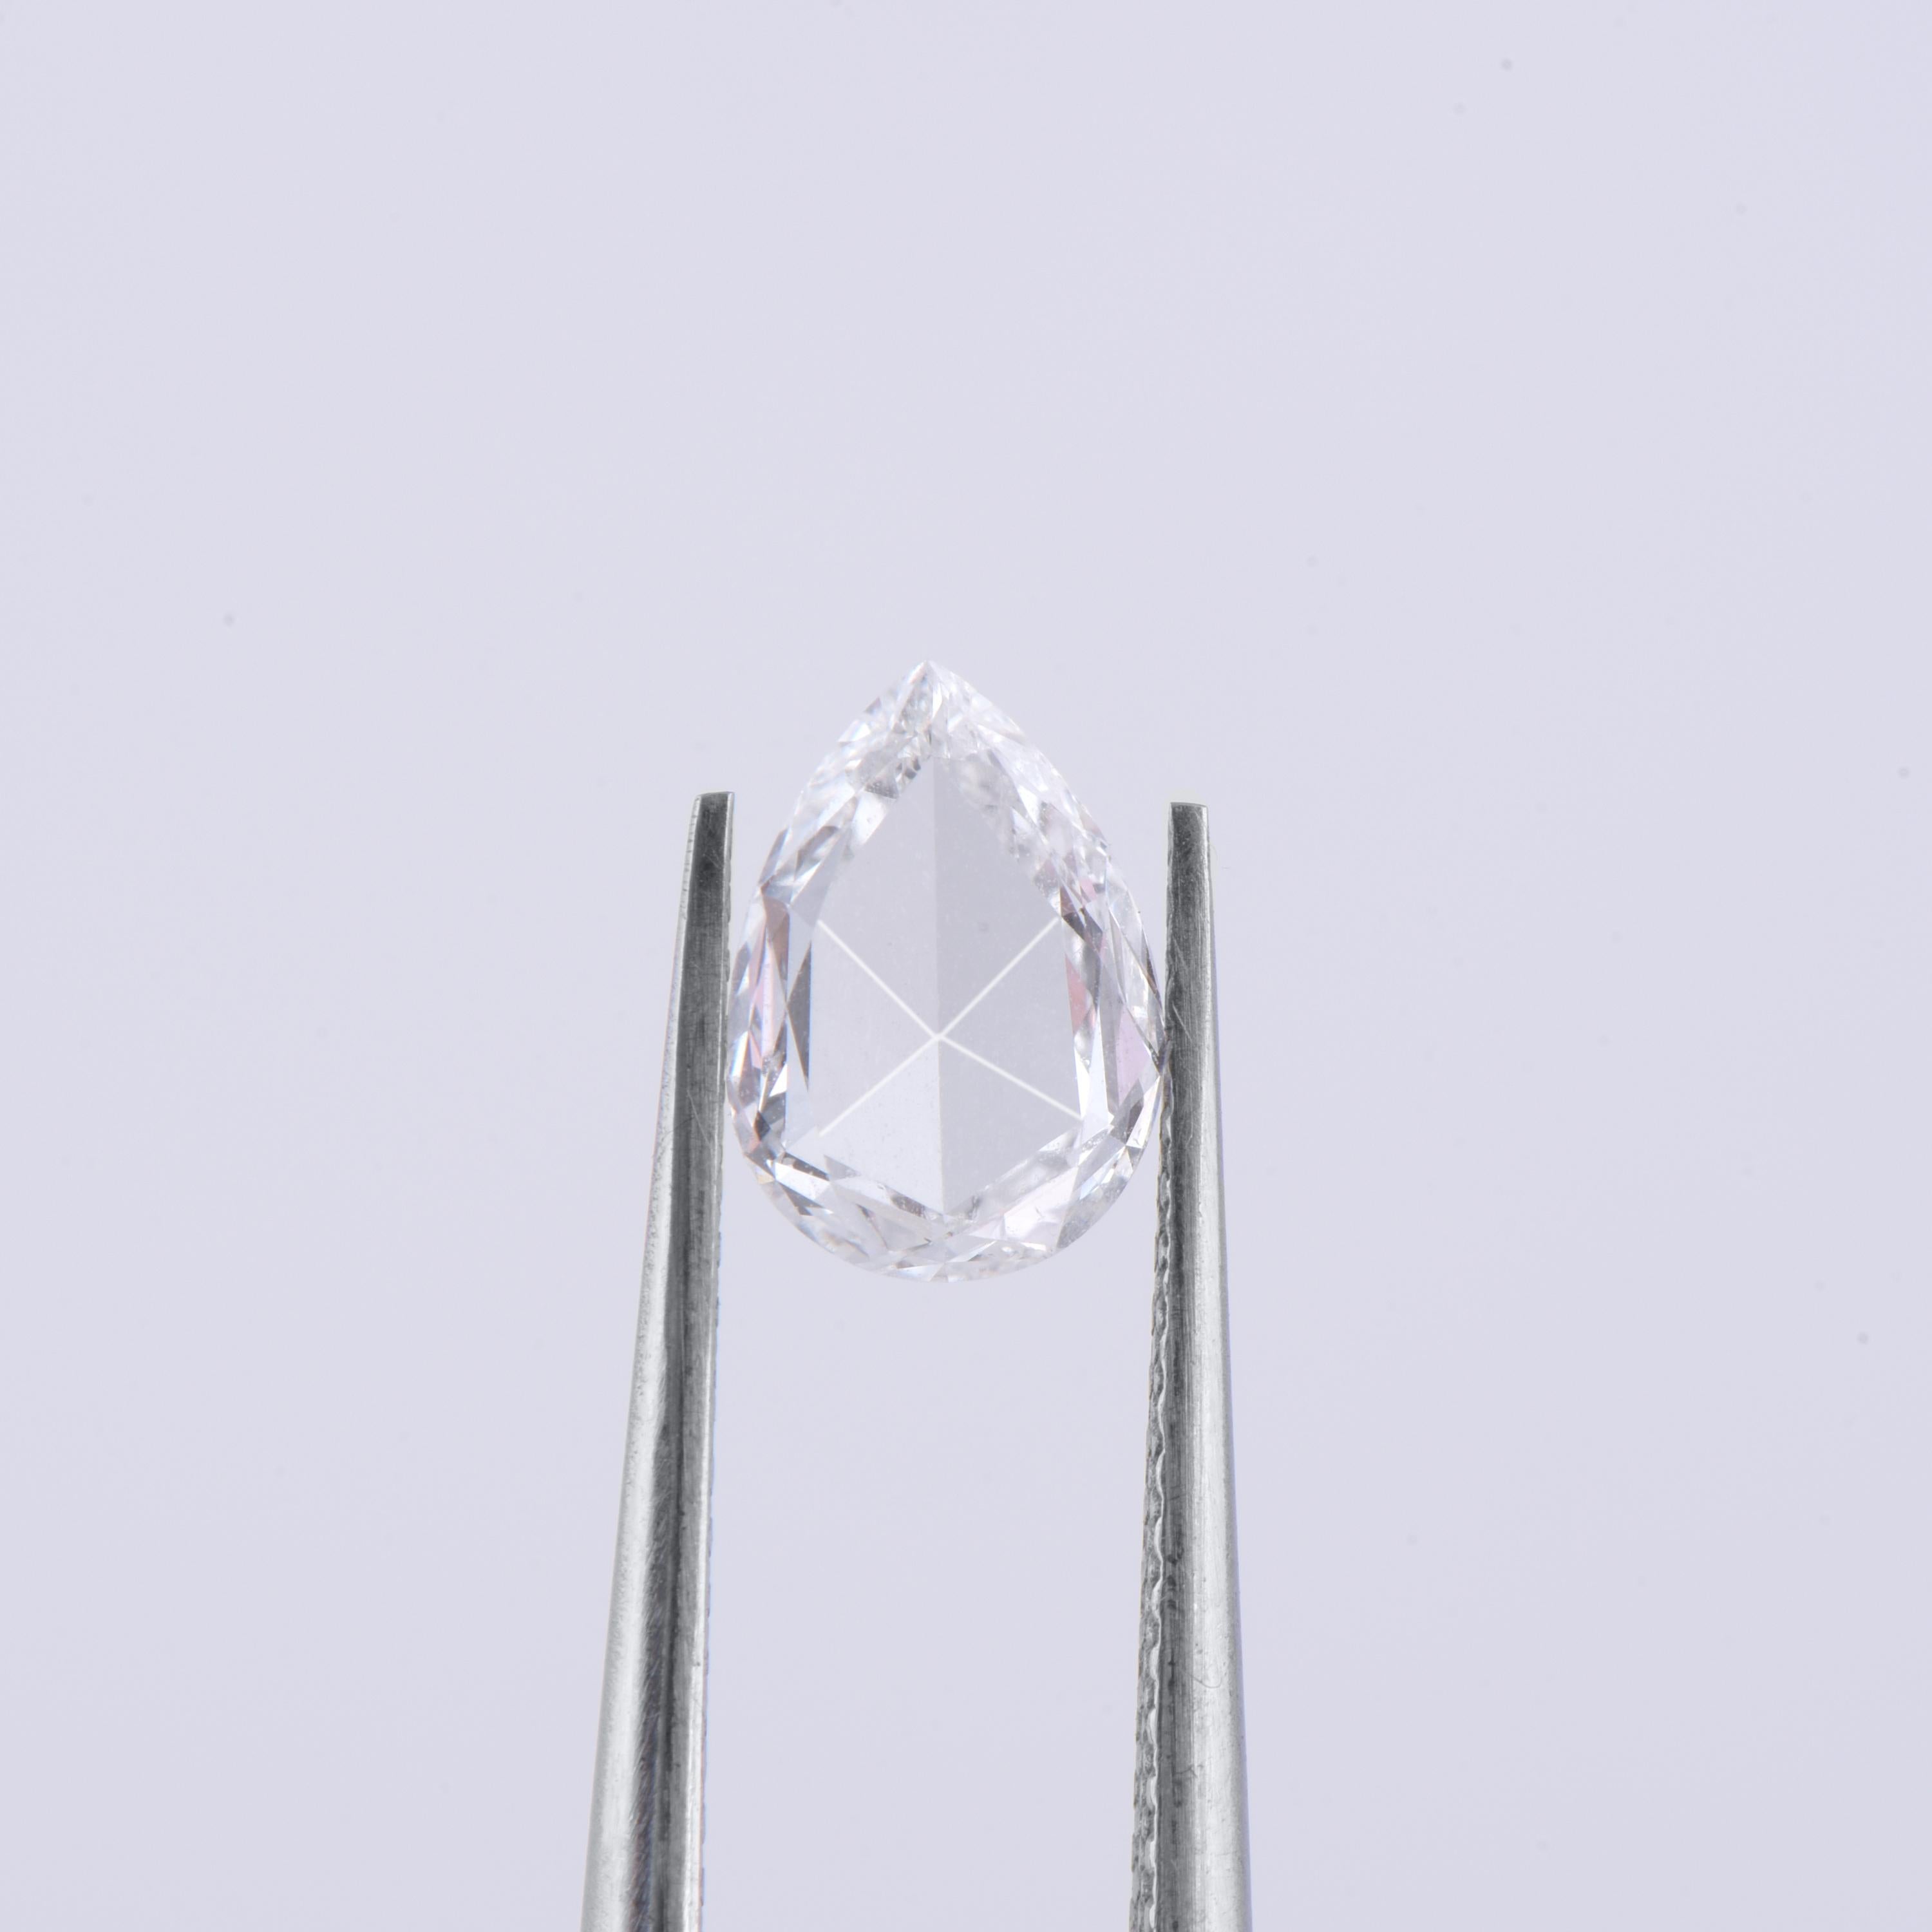 0.82 Karat farbloser Diamant, Farbe F, Reinheit VS1 Diamant im Rosenschliff mit Birne. Der Diamant weist Transparenz und Symmetrie auf. Mit einer Größe von 7,9 x 5,6 mm kann dieser Diamant in einen Verlobungsring oder in ein anderes Design Ihrer